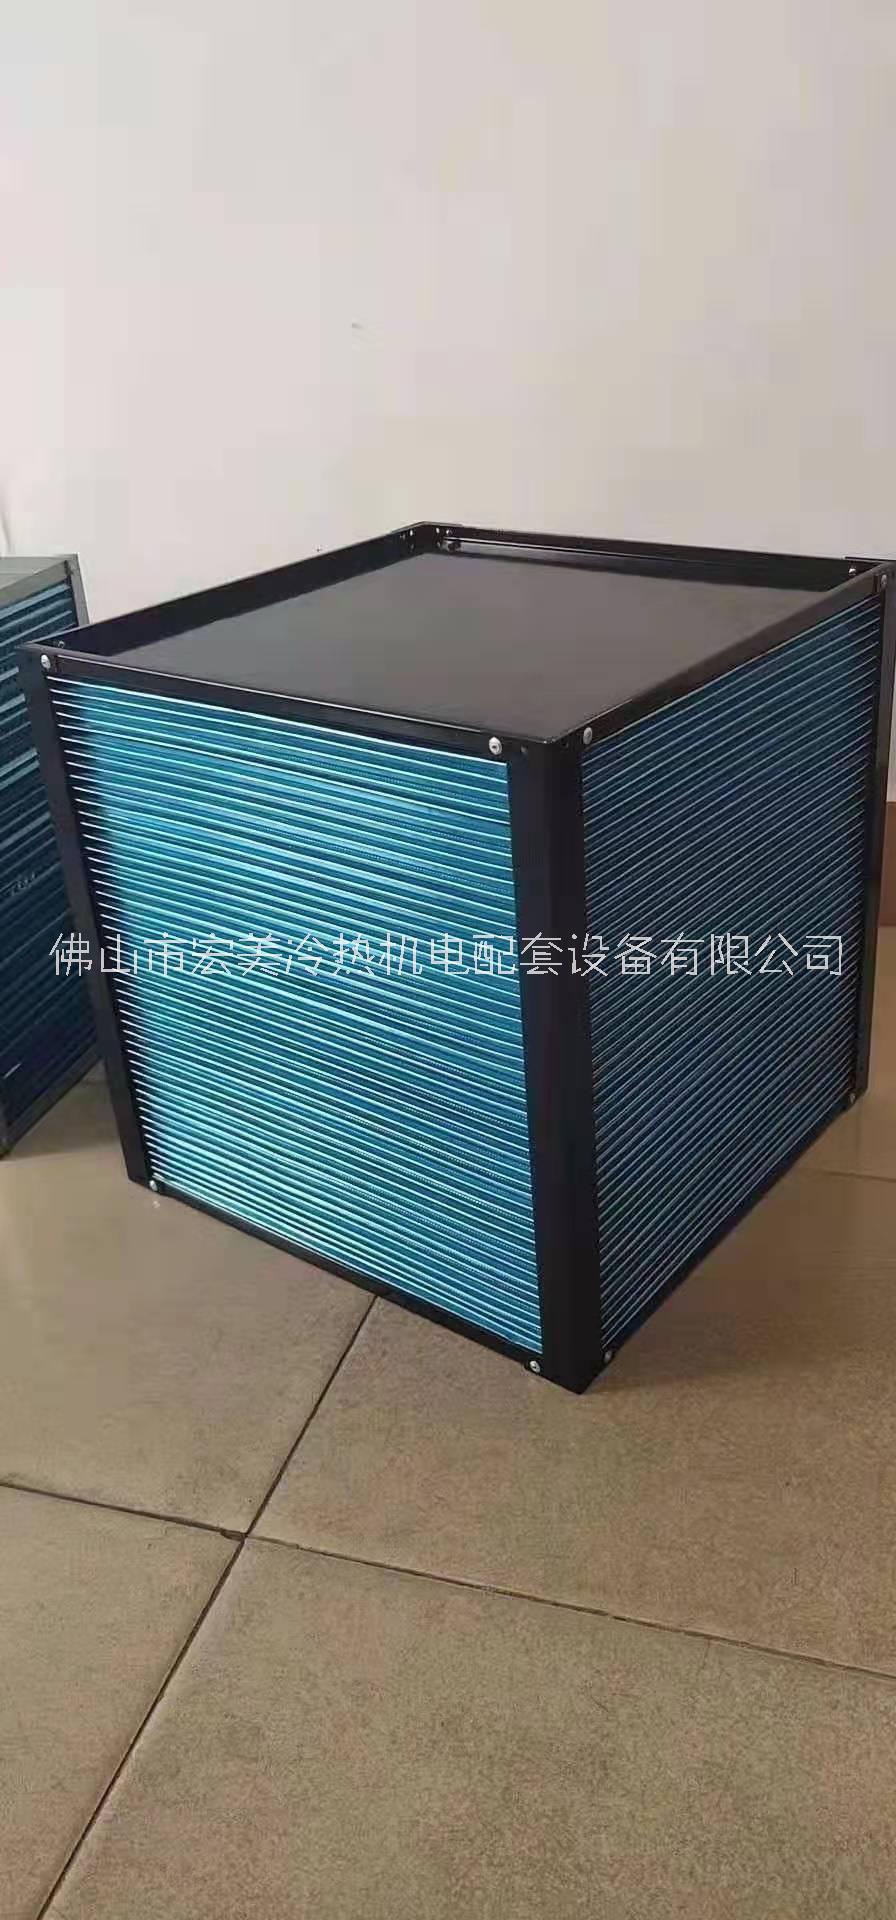 新风热回收芯体 全热交换器显热交换器热回收新风(冷)热交换器芯体换热芯体